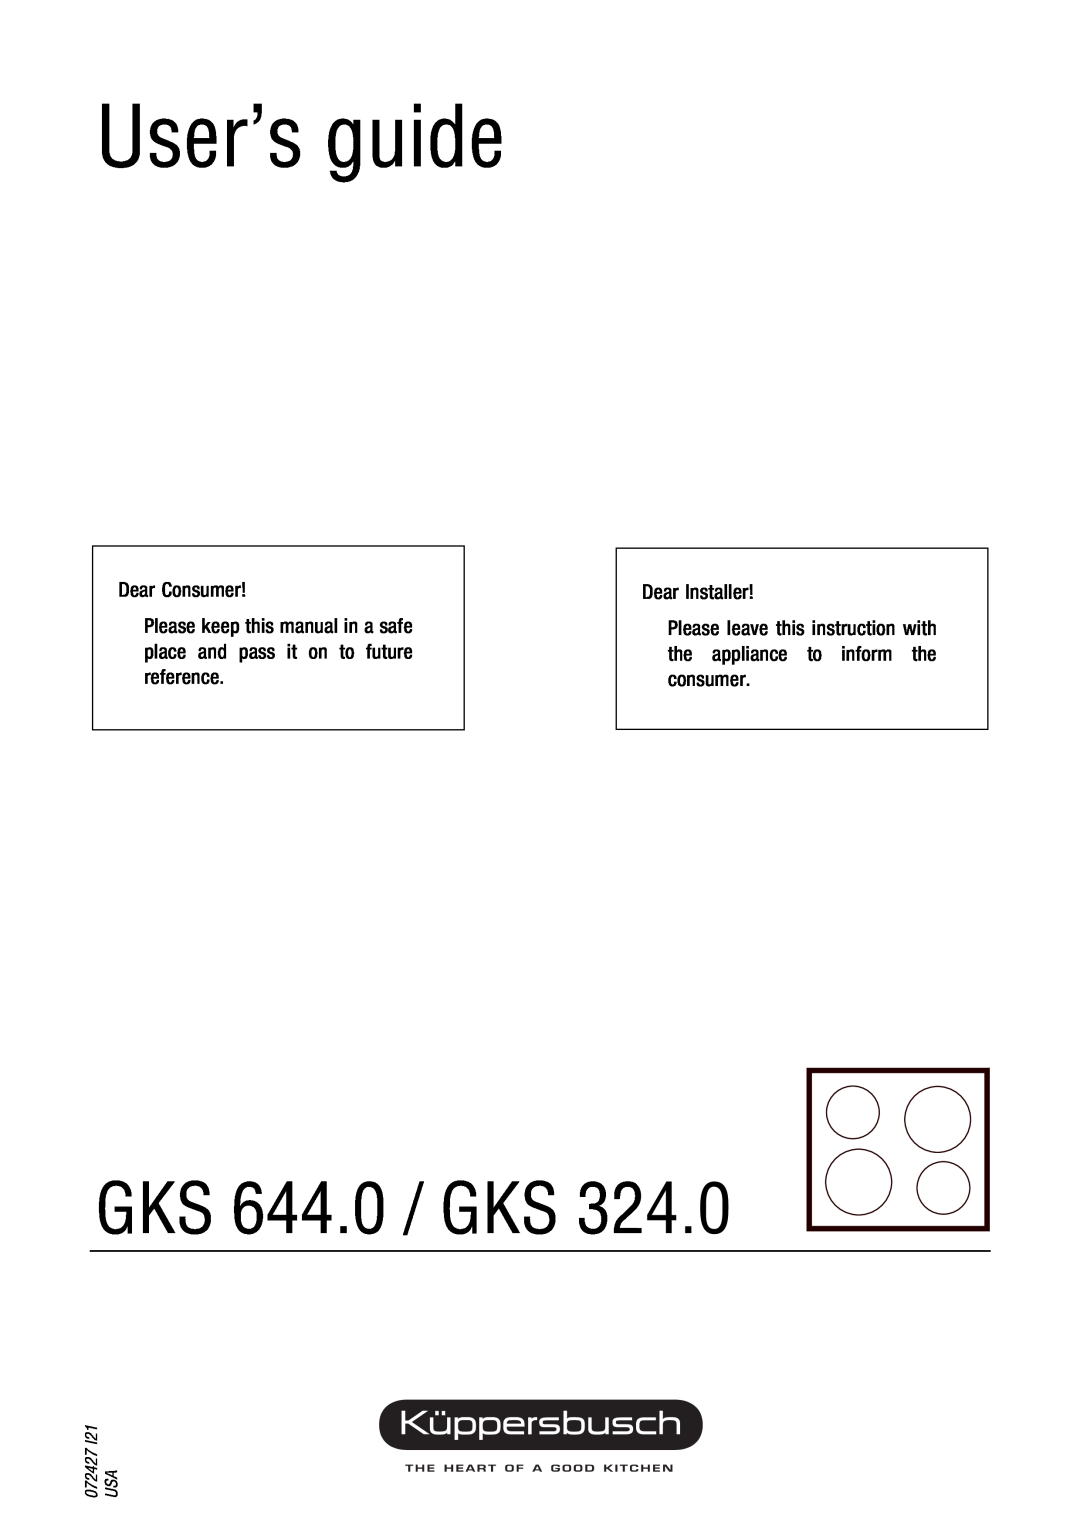 Kuppersbusch USA GKS 324.0 installation instructions Installation Instructions, GKS 644.0 / GKS, for LP Gas Unit, 072429 